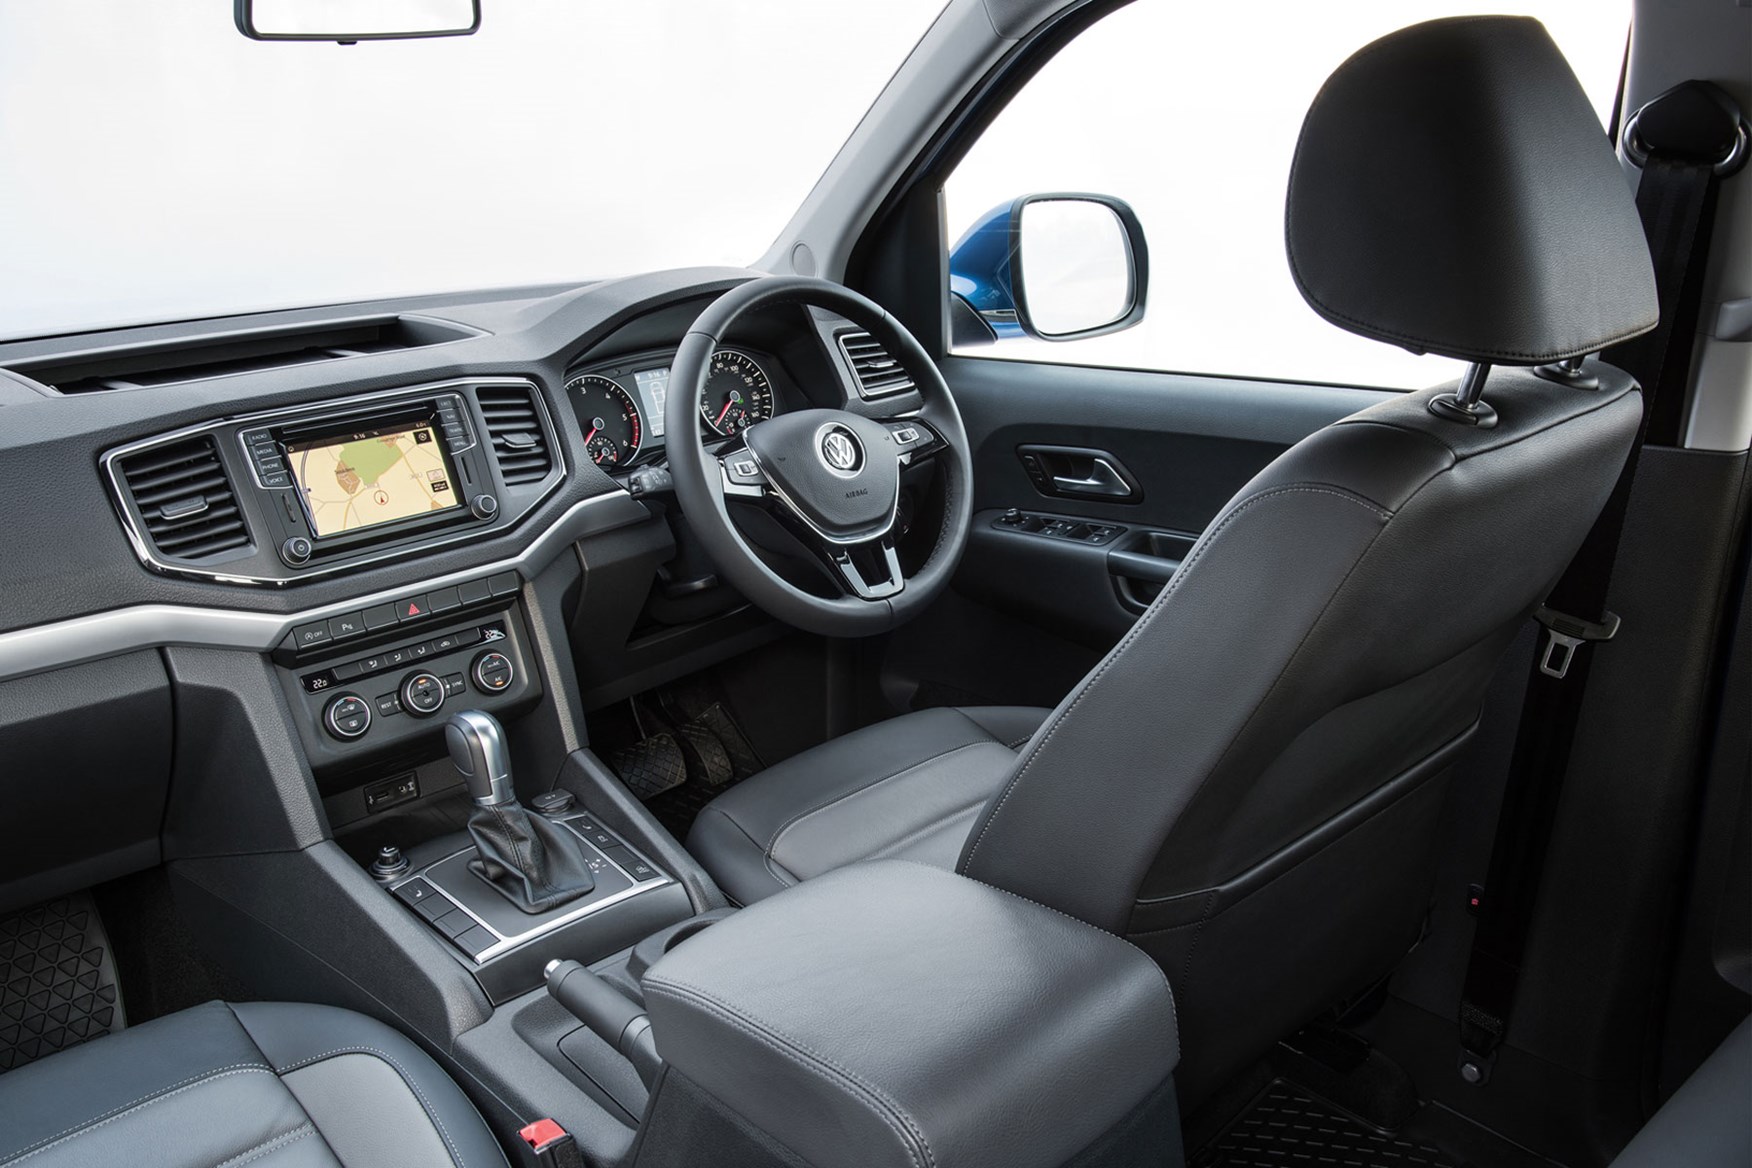 VW Amarok V6 Aventura 224hp review - cab interior